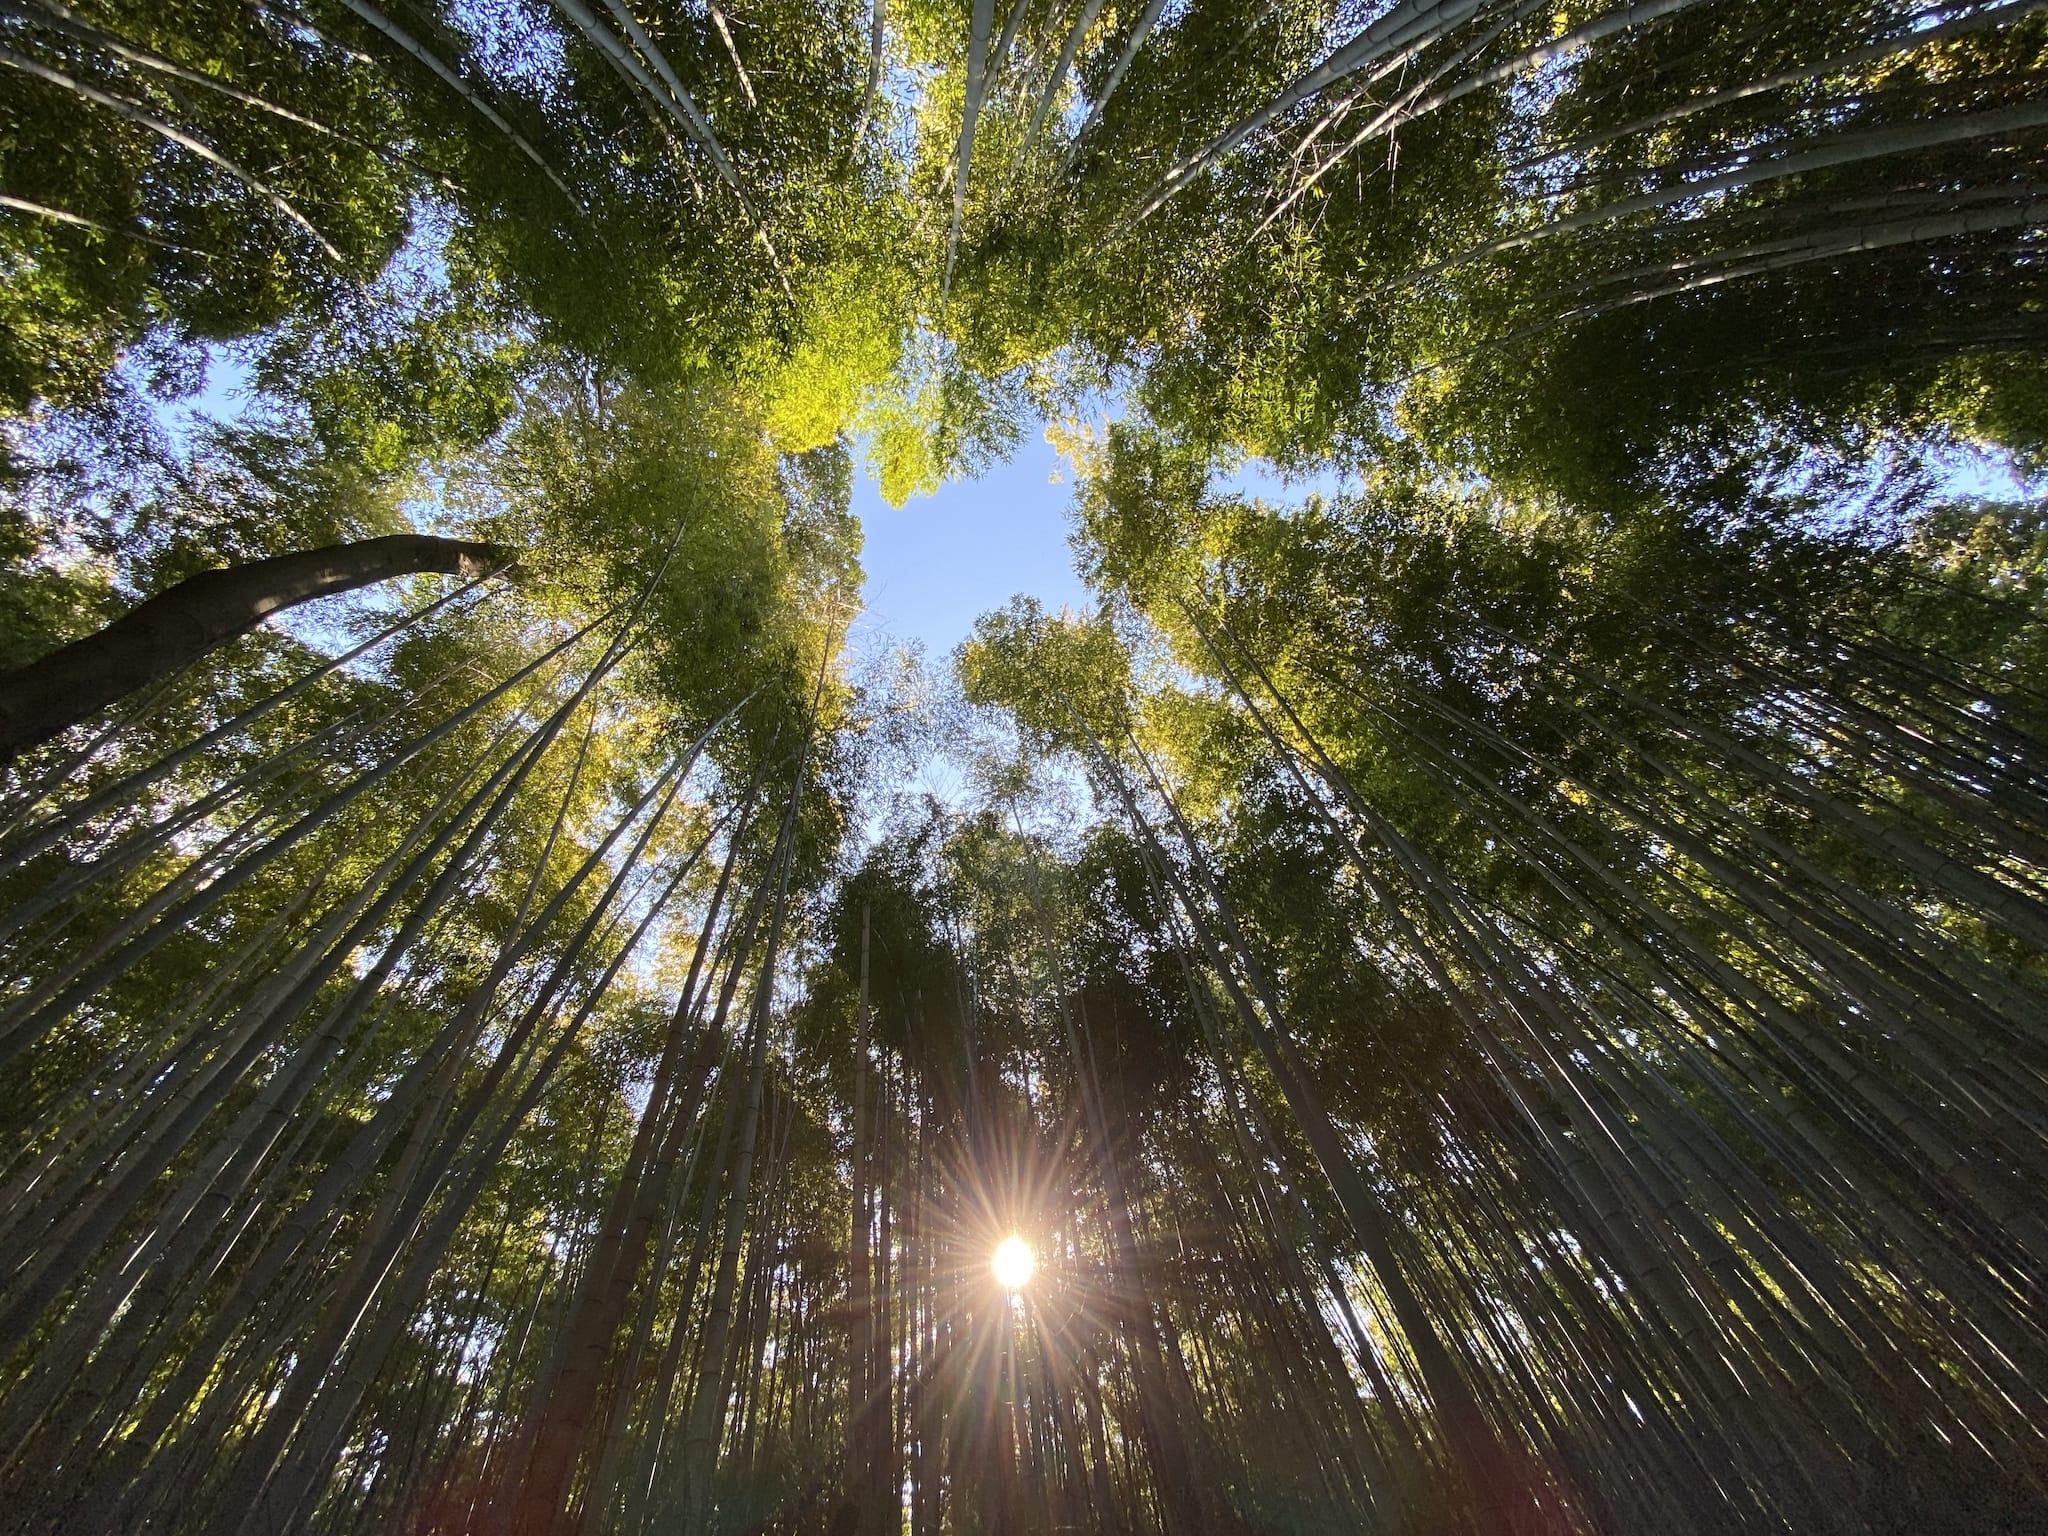 Arashiyama Bamboo Groove, with a sunshine